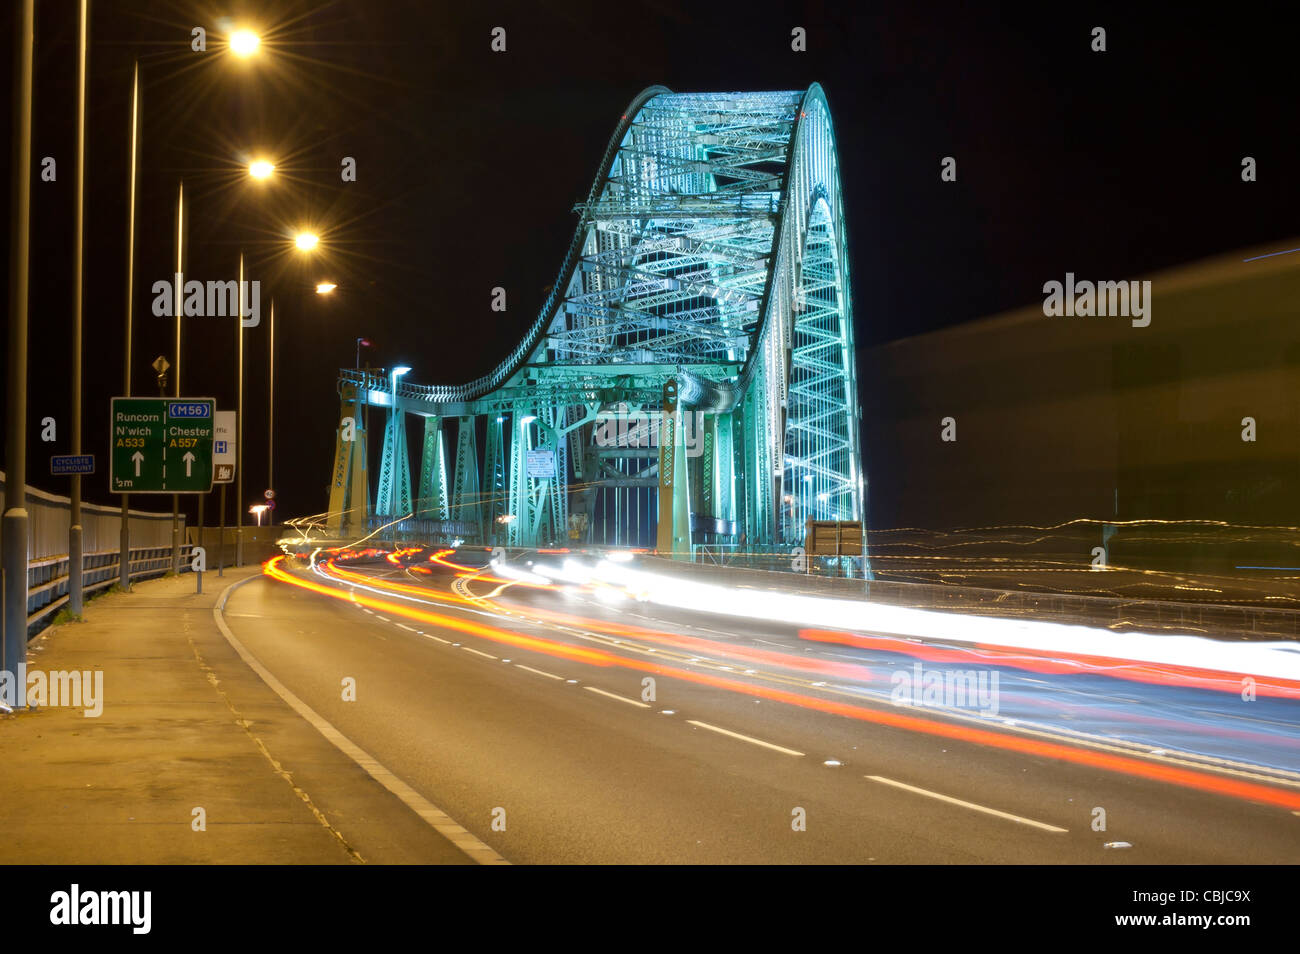 Widnes-Runcorn Silver Jubilee Bridge, photographié de nuit avec une longue exposition à produire de la lumière-trails Banque D'Images